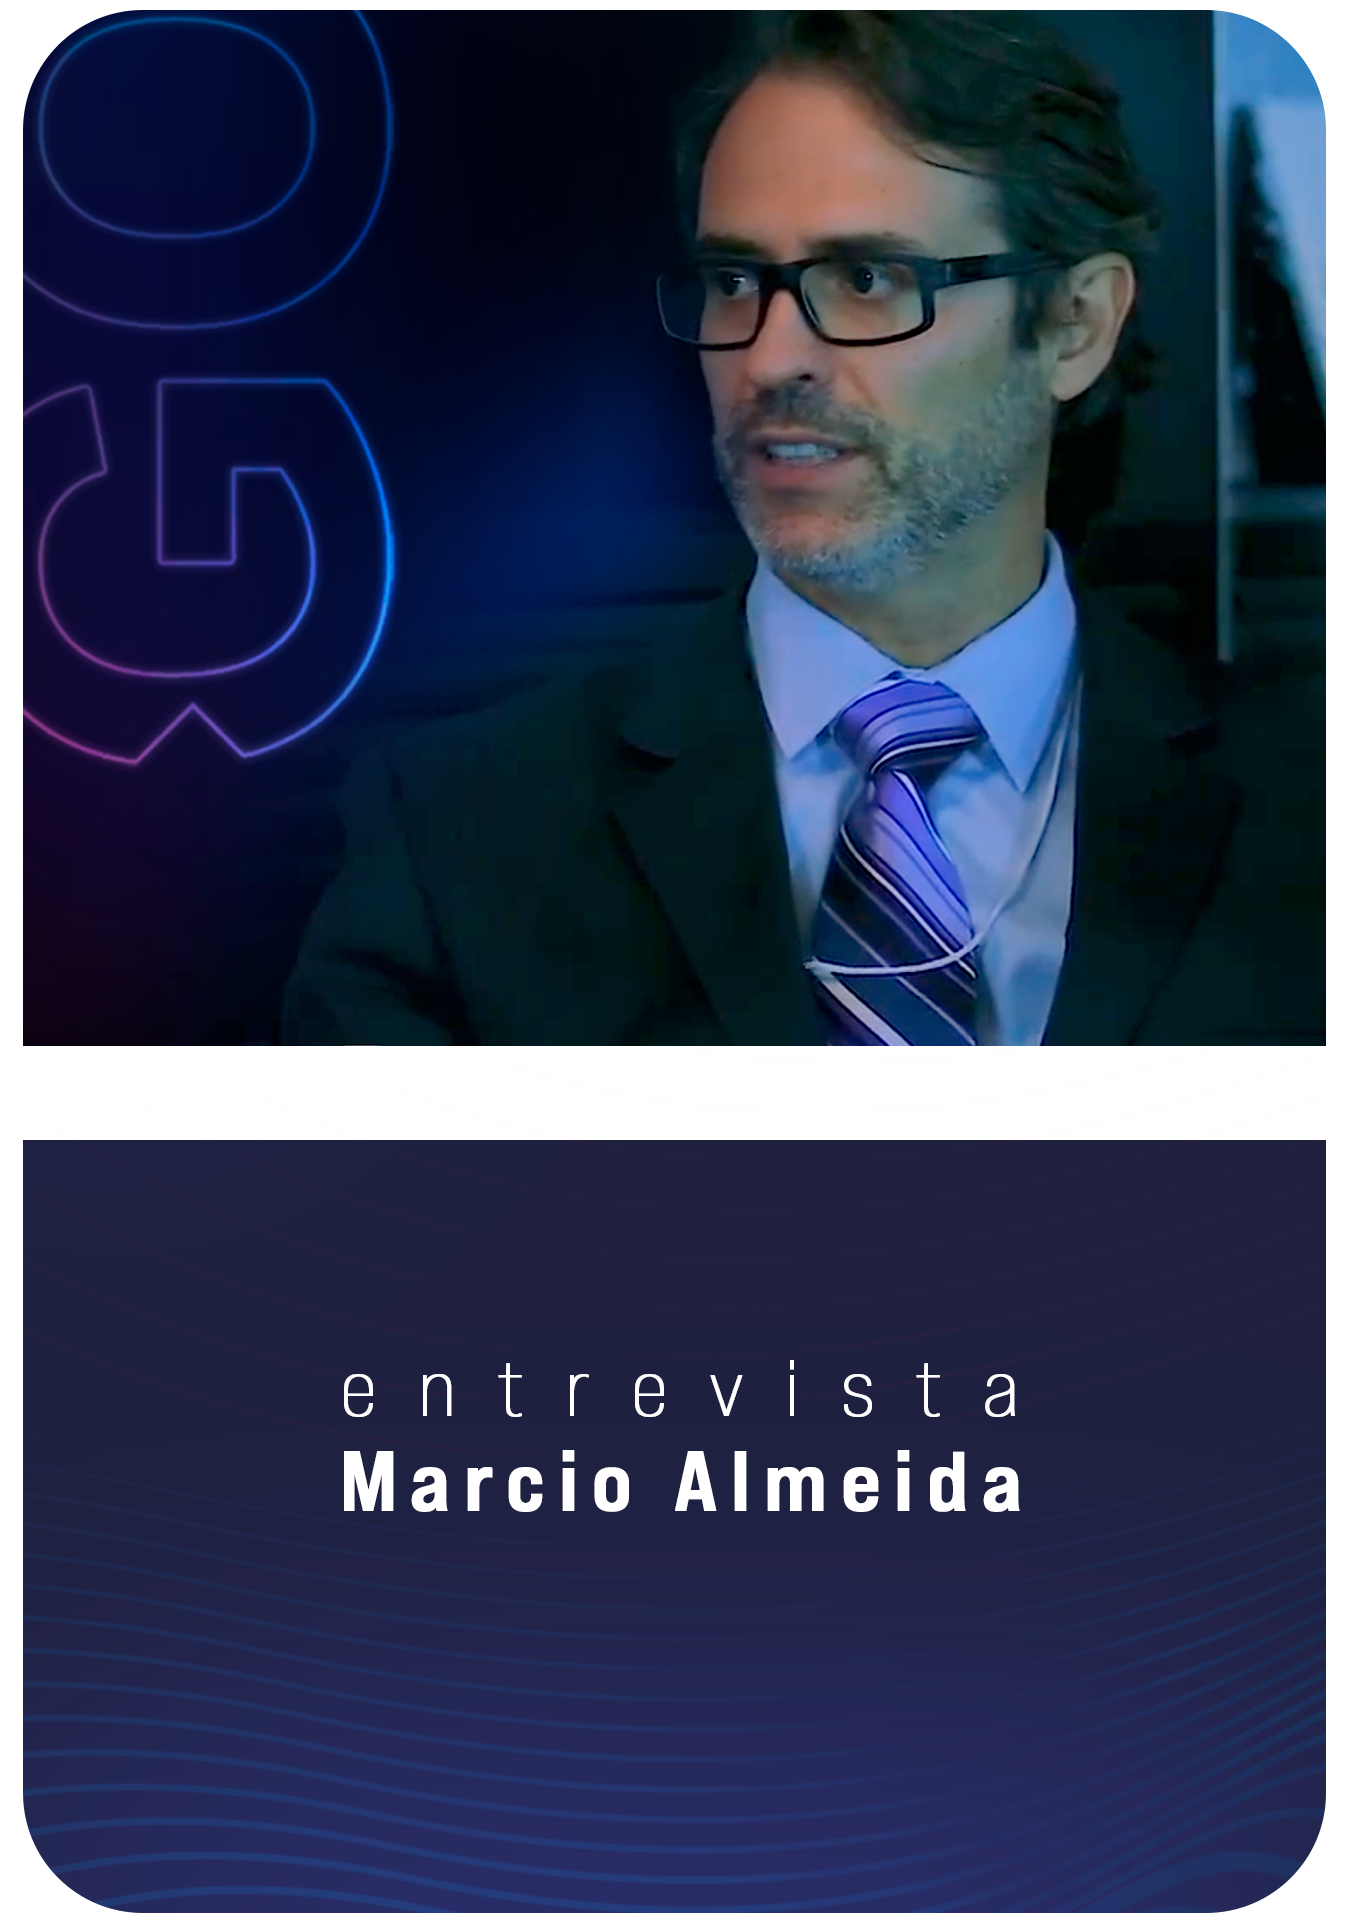 Dr. Marcio Almeida